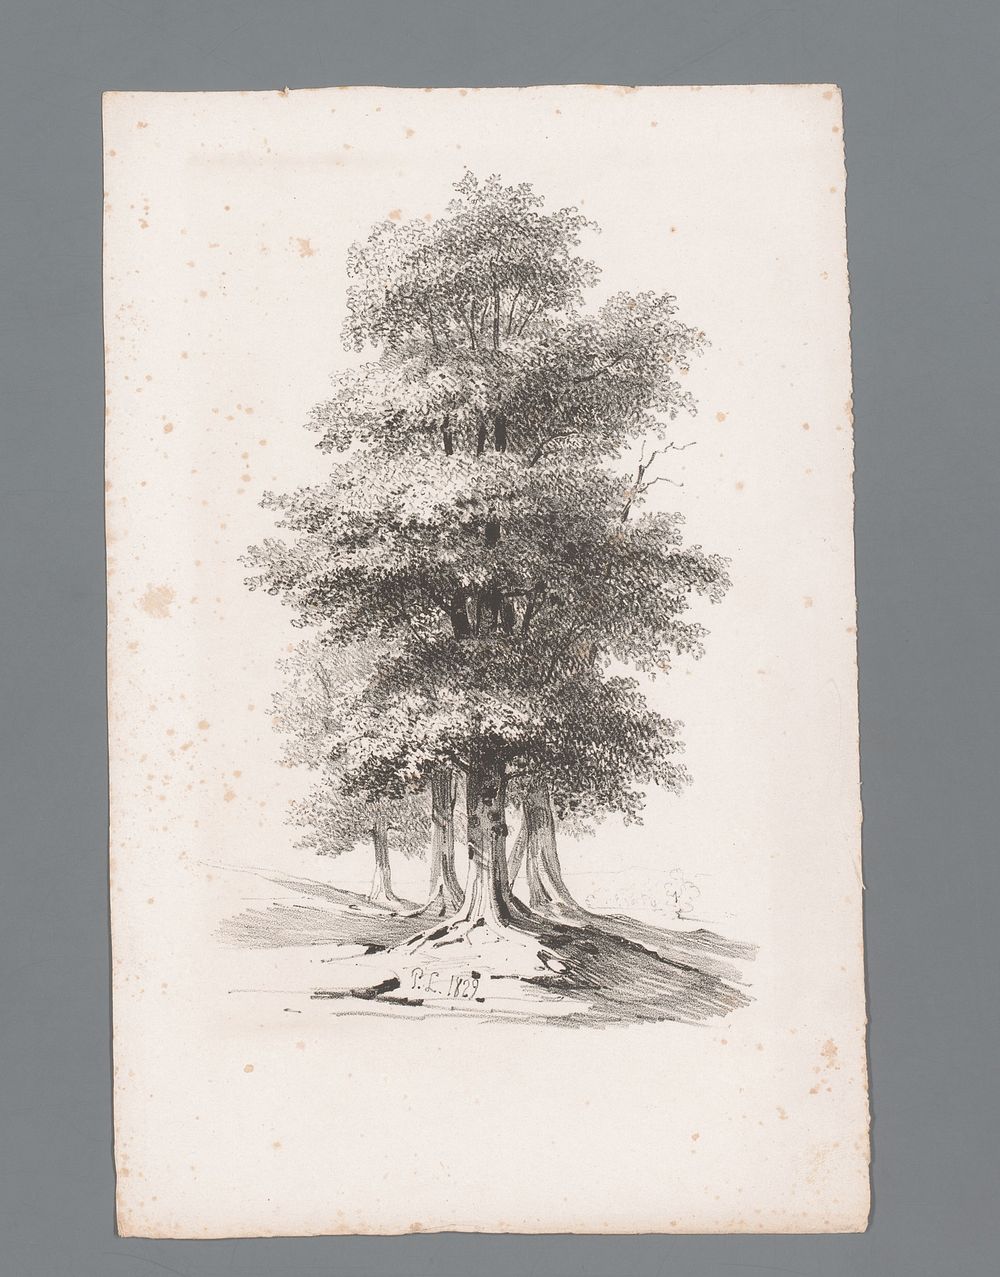 Groep met vijf bomen (1829 - 1839) by Paulus Lauters and Dewasme et Laurent